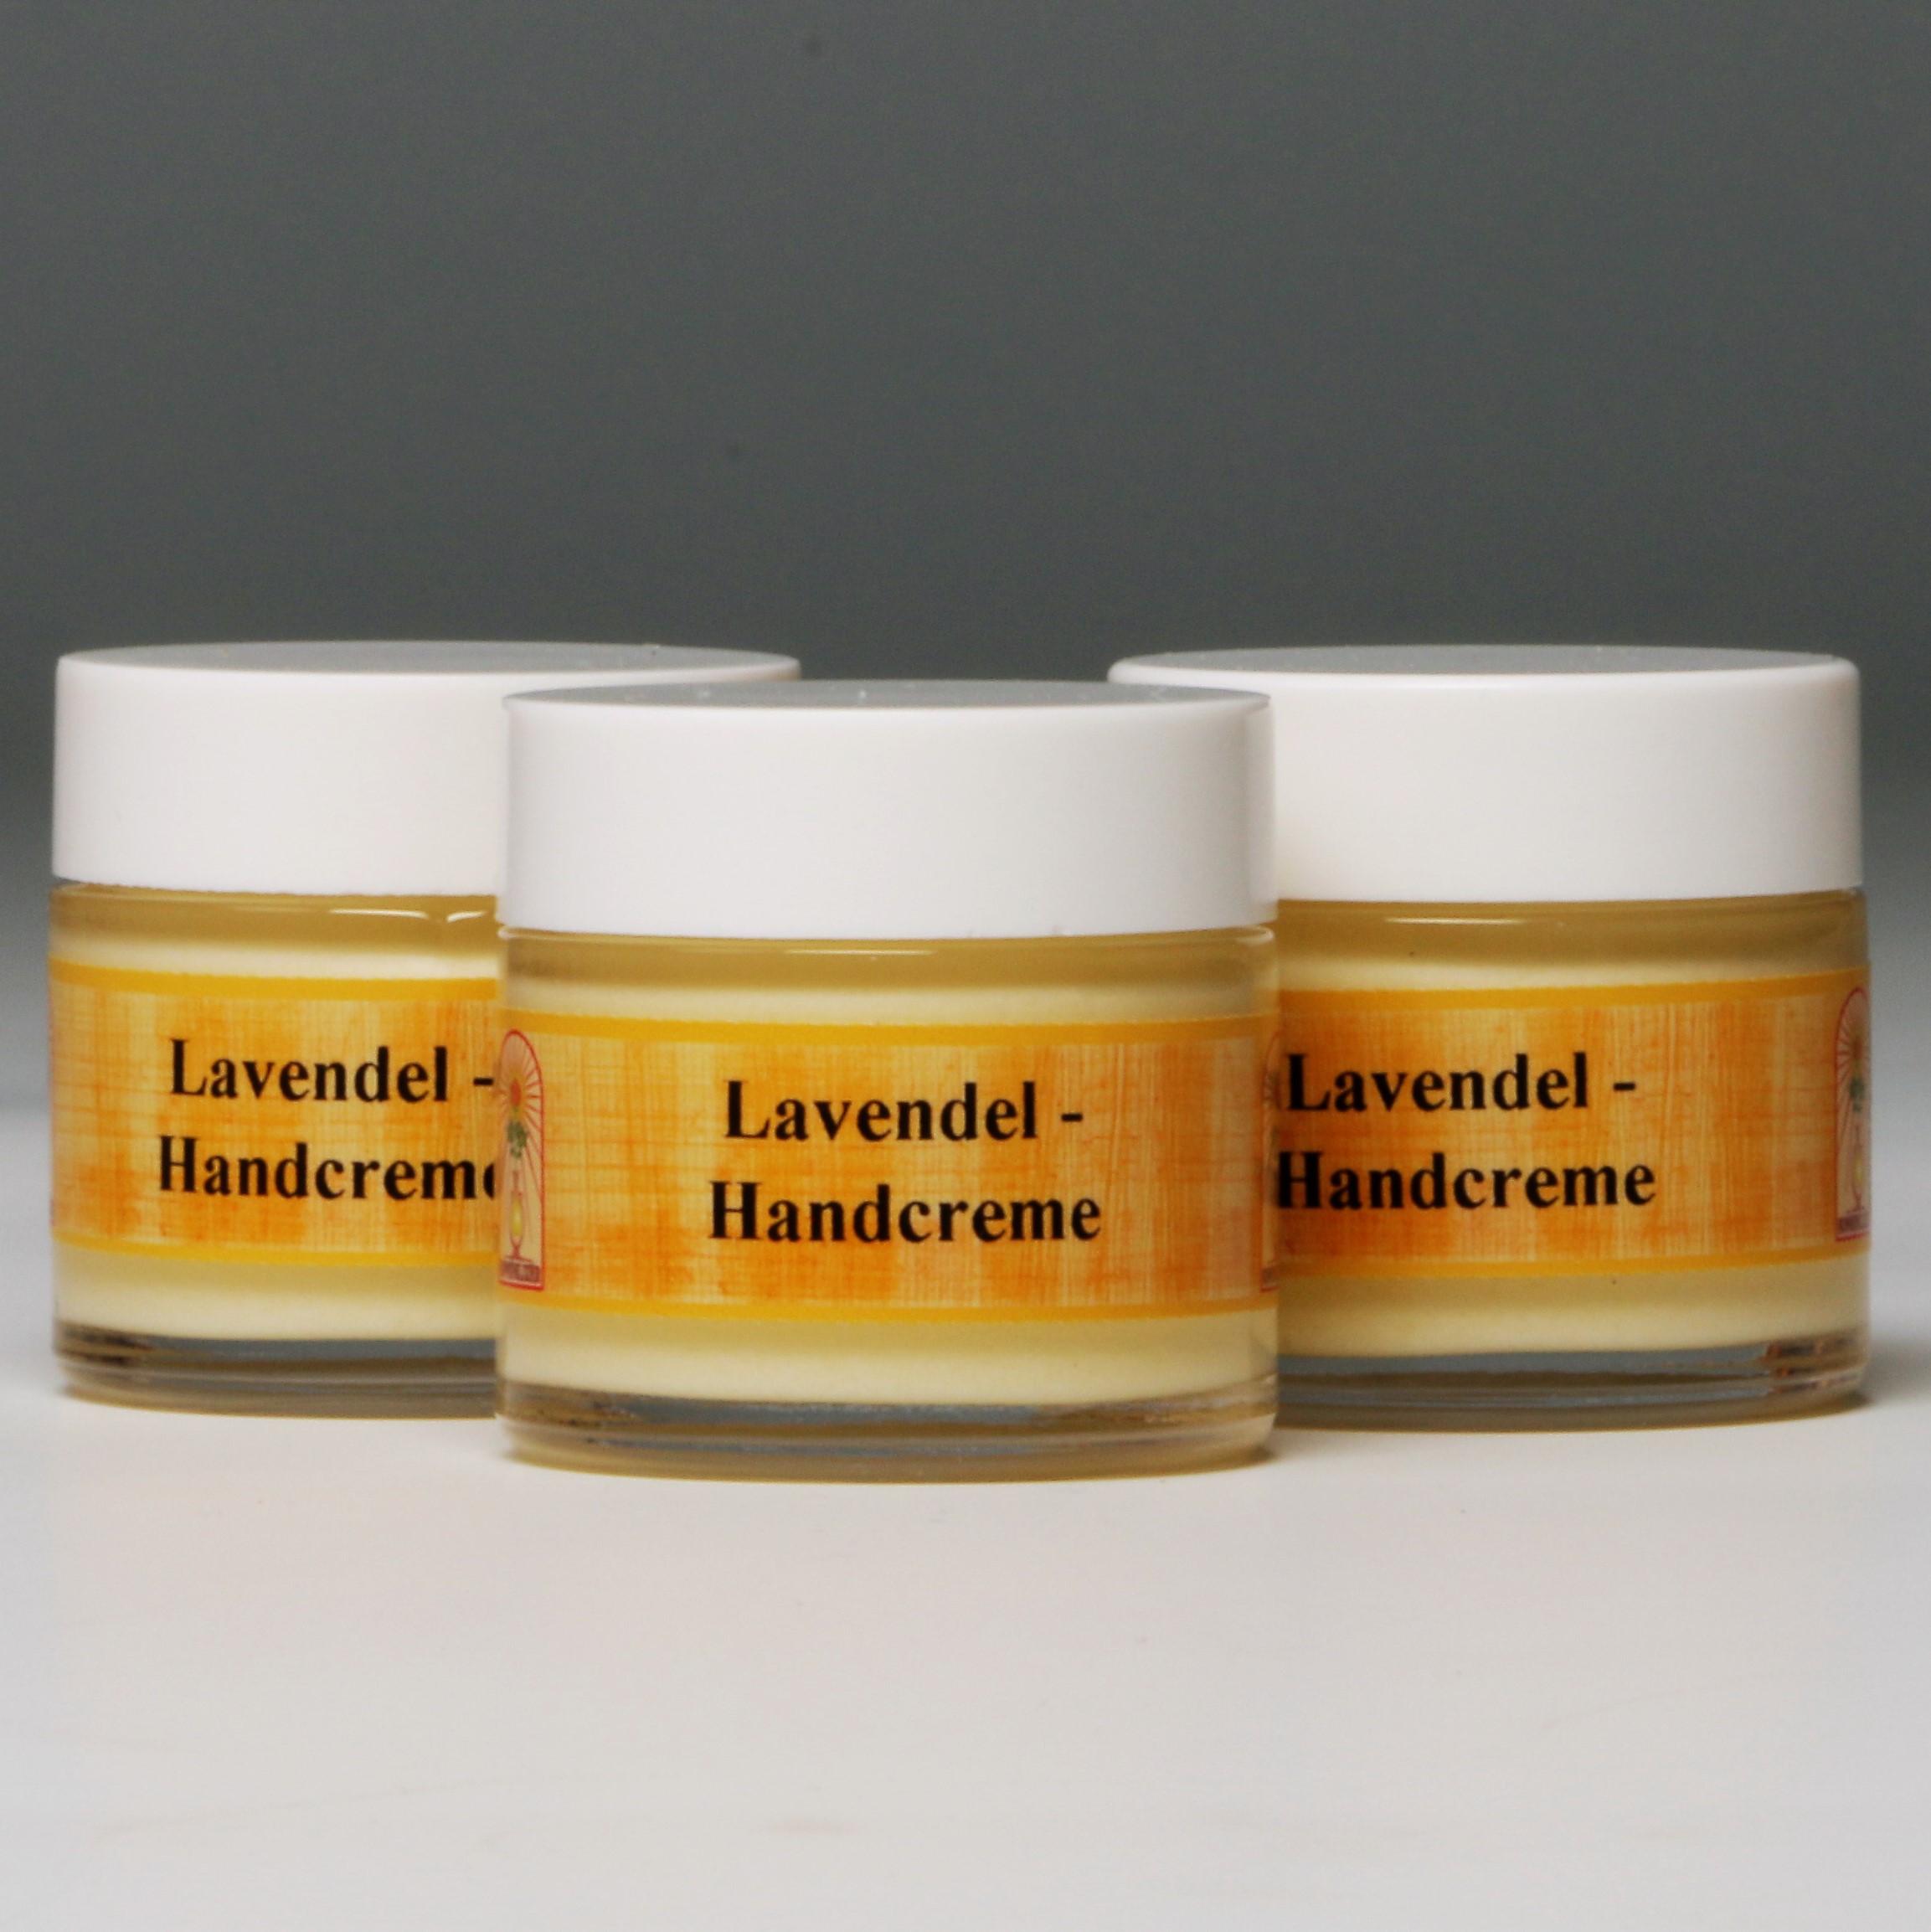 Lavendel Handcreme (3x25ml)  günstig bestellen bei Linny-Naturkost